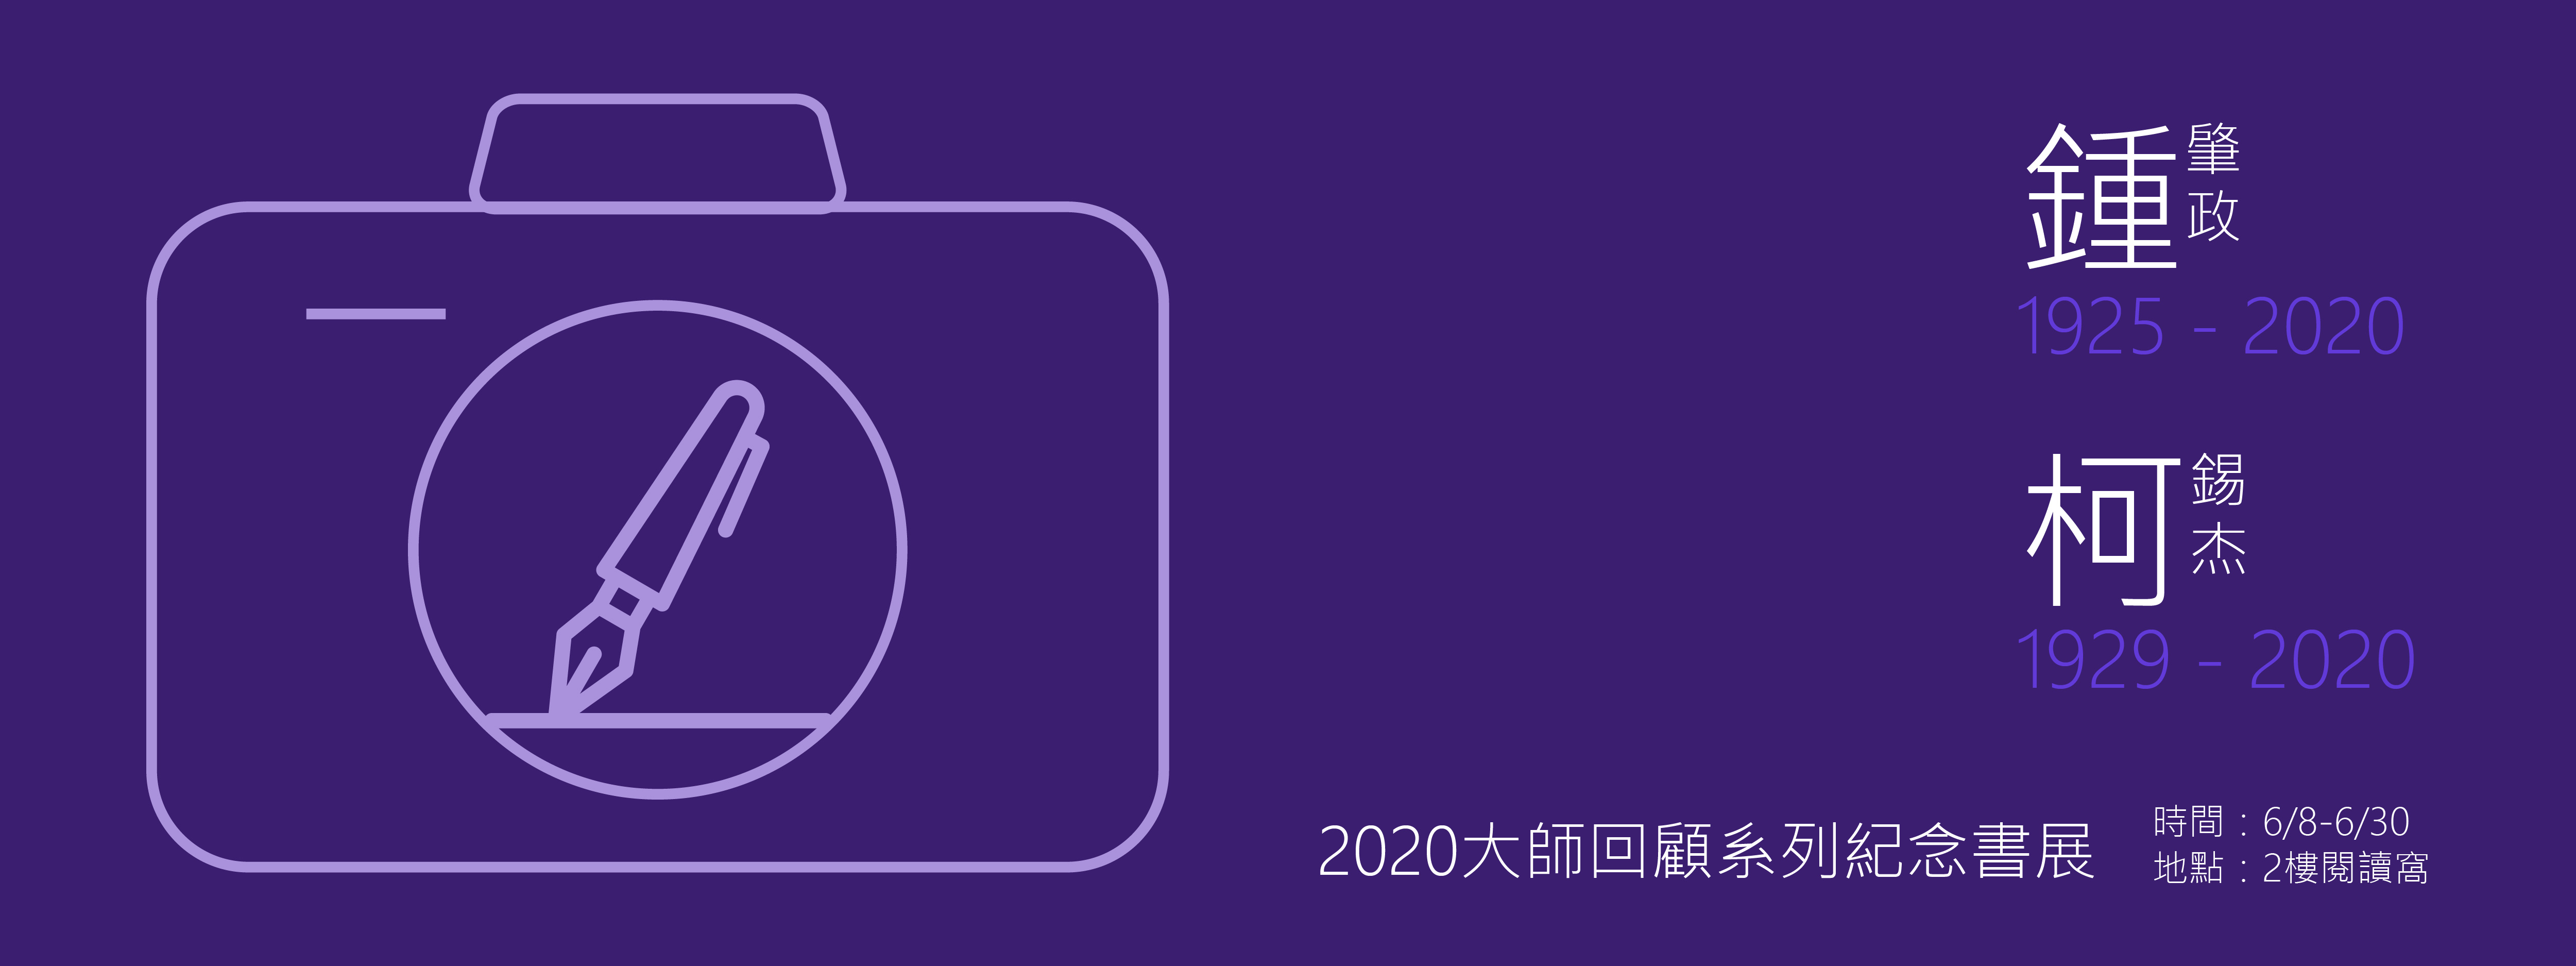 20202大師書展banner-06-06